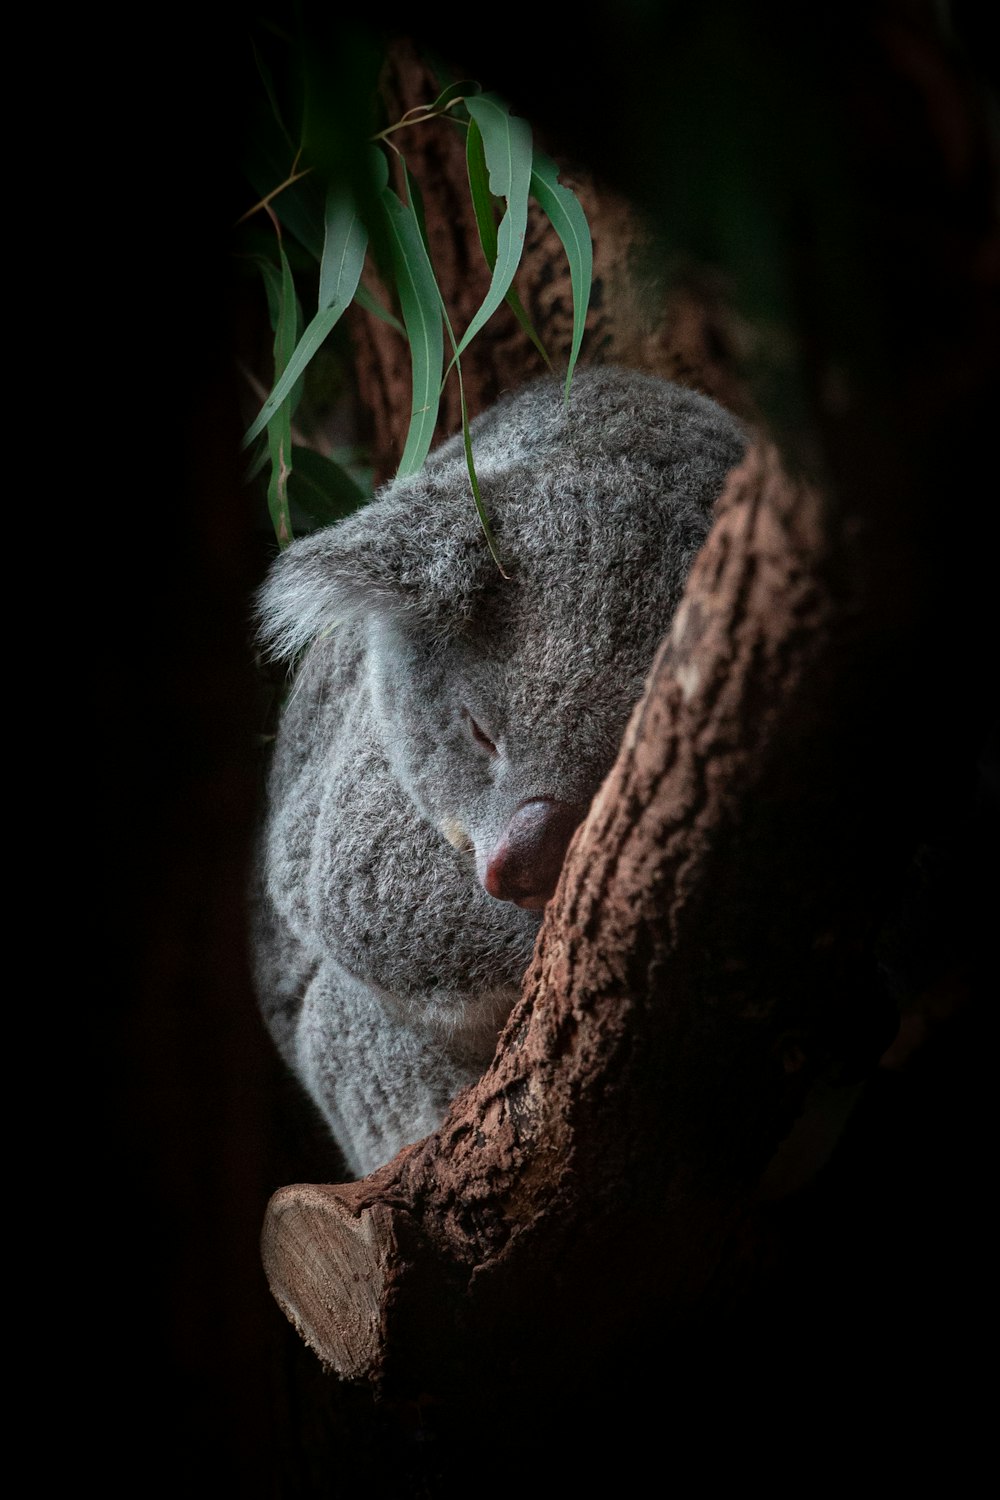 a koala sleeping in a tree in the dark